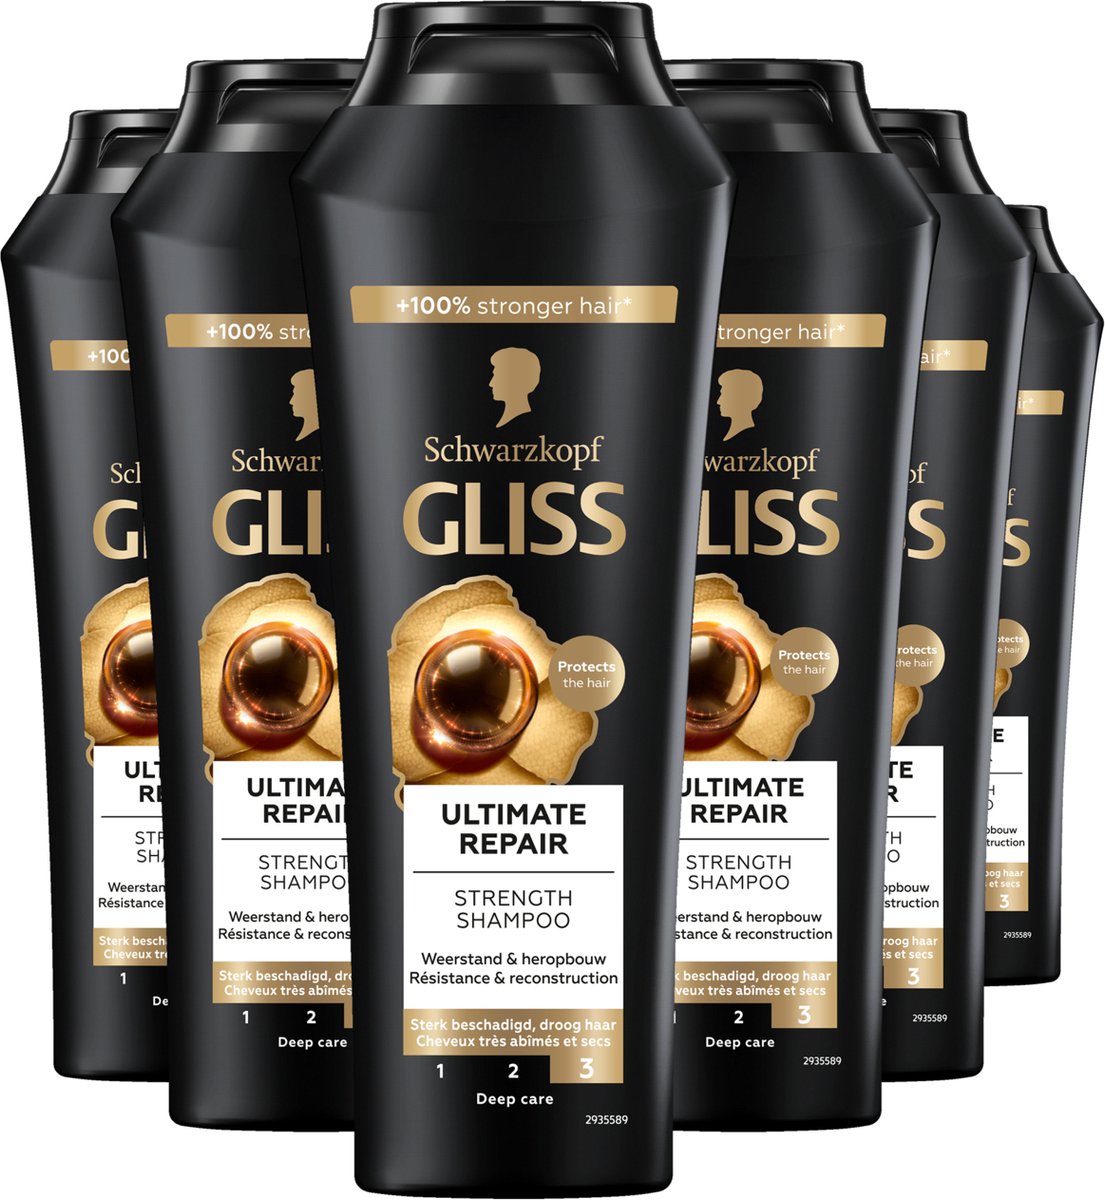 Gliss - Ultimate Repair - Shampoo - Haarverzorging - Voordeelverpakking - 6x 250 ml